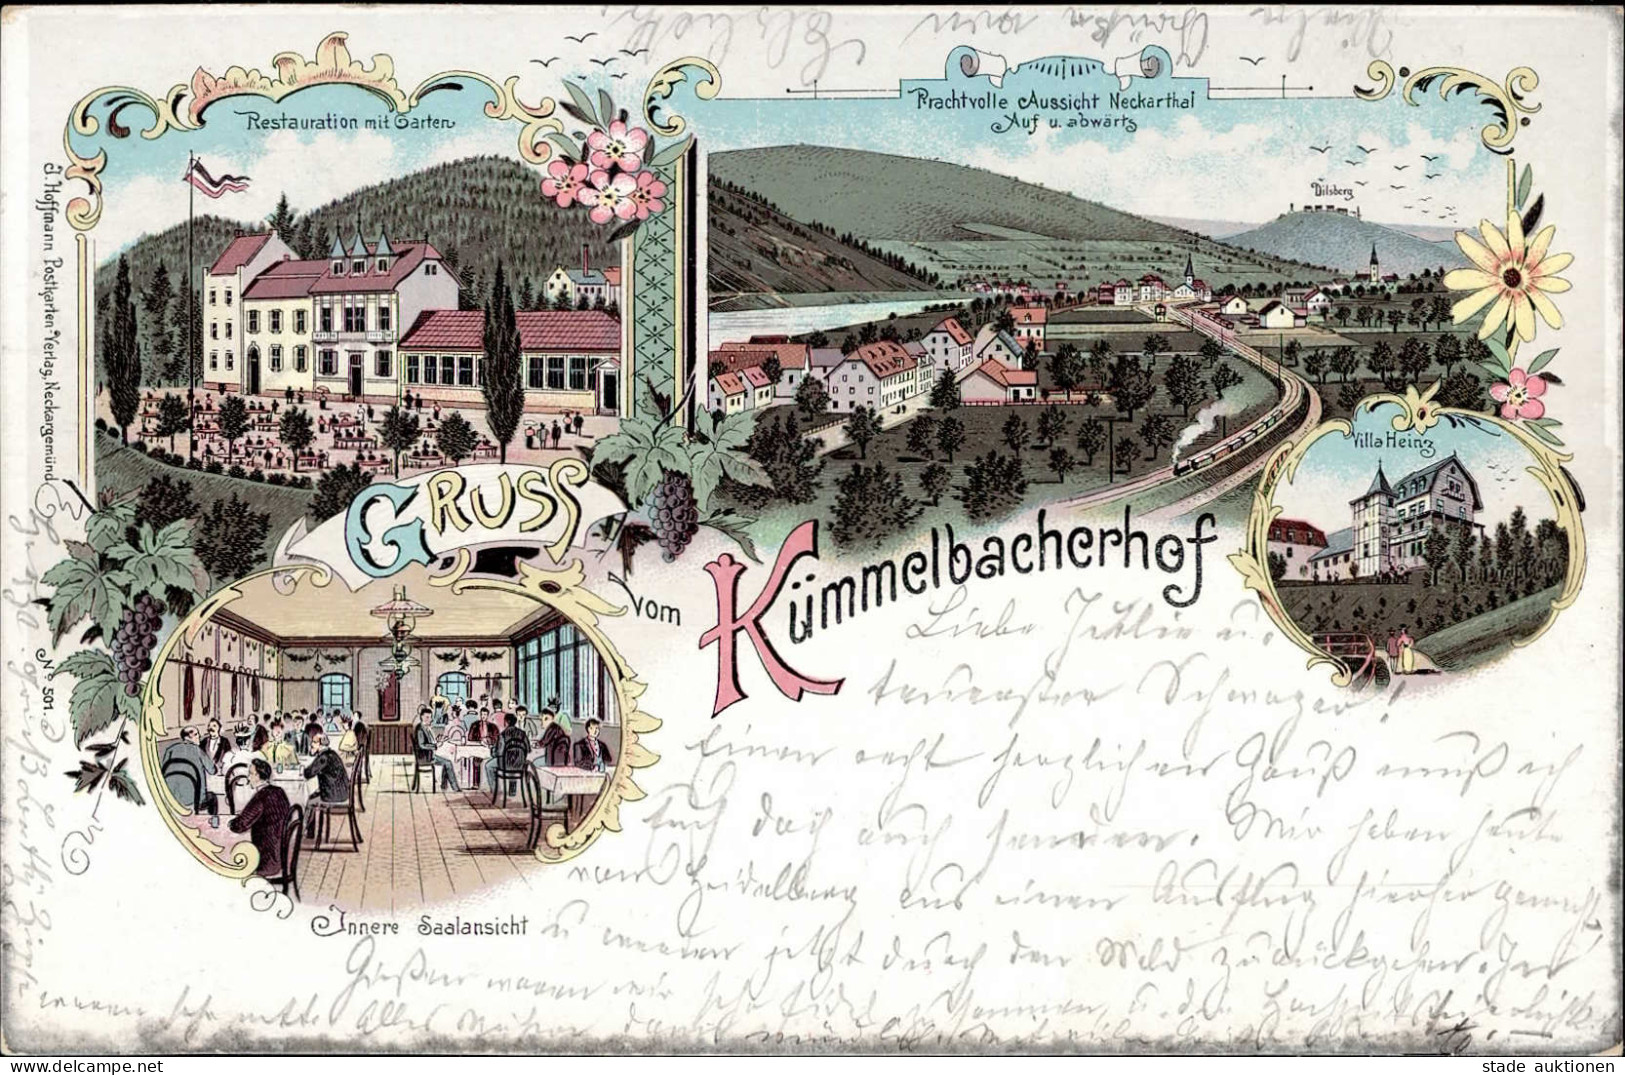 Kümmelbacherhof (6903) Gasthaus Villa Heinz 1900 II (beschnitten, Fleckig) - Heidelberg